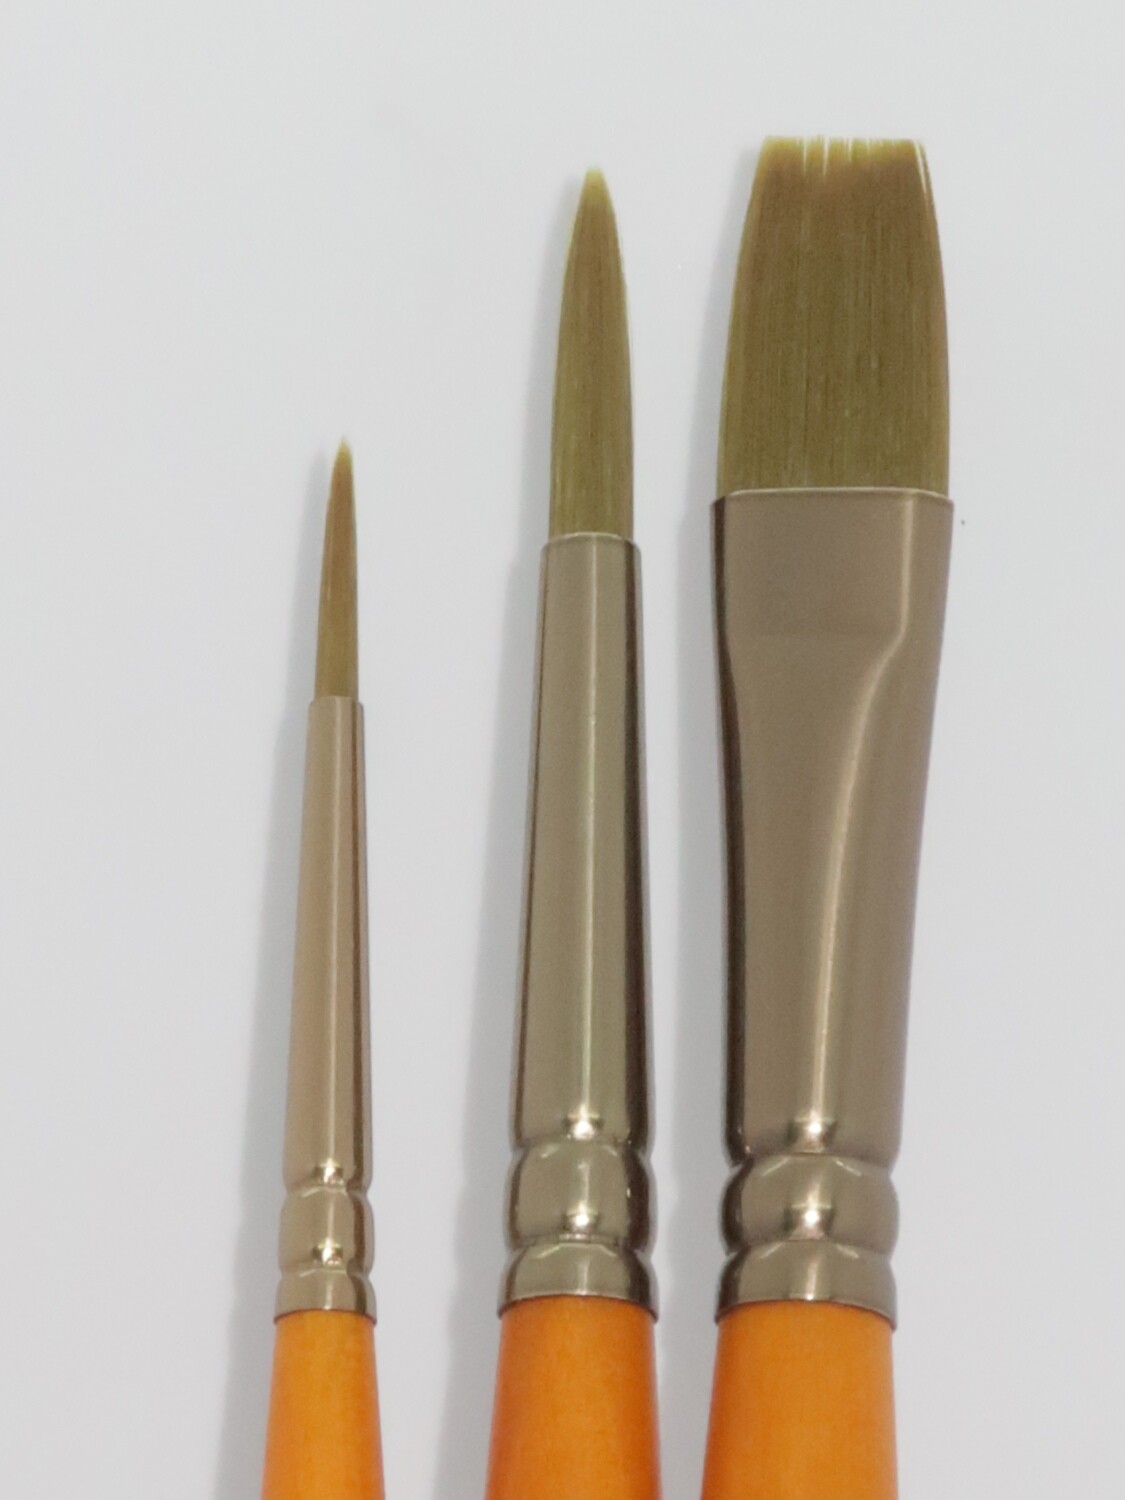 PANART GG-01 Gold Green Brushes set of 3